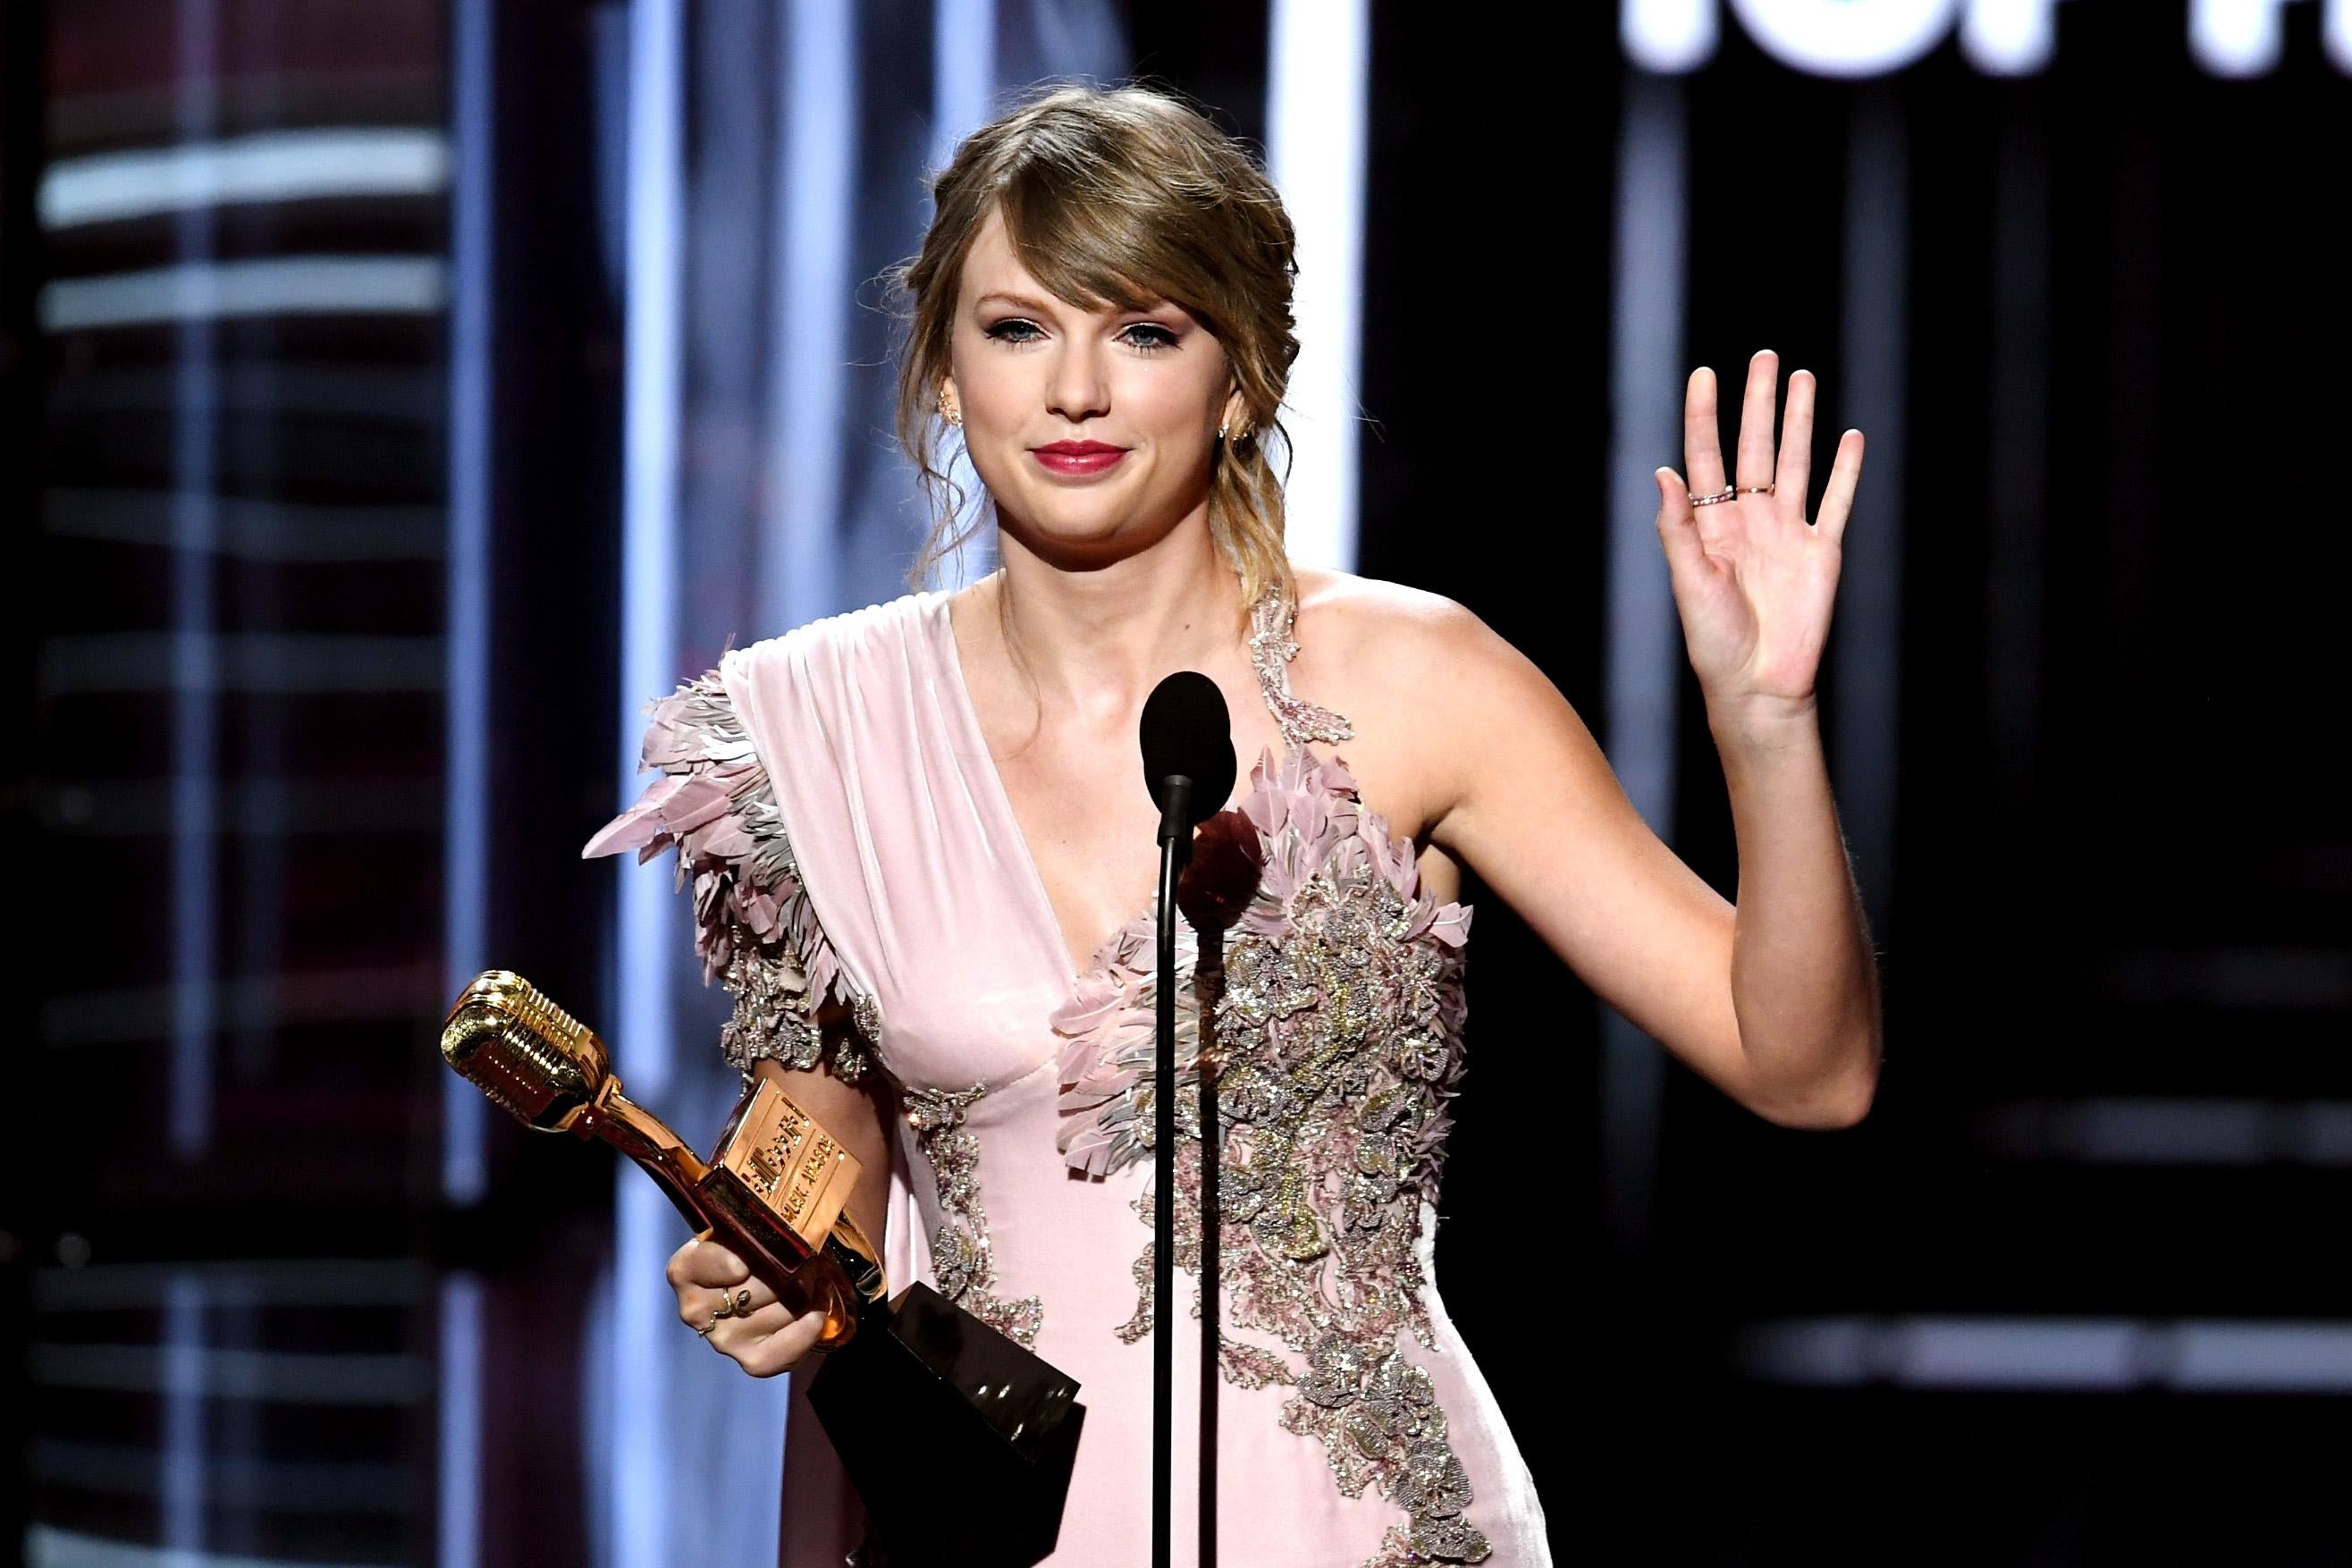 Taylor Swift waving goodbye at an awards show.